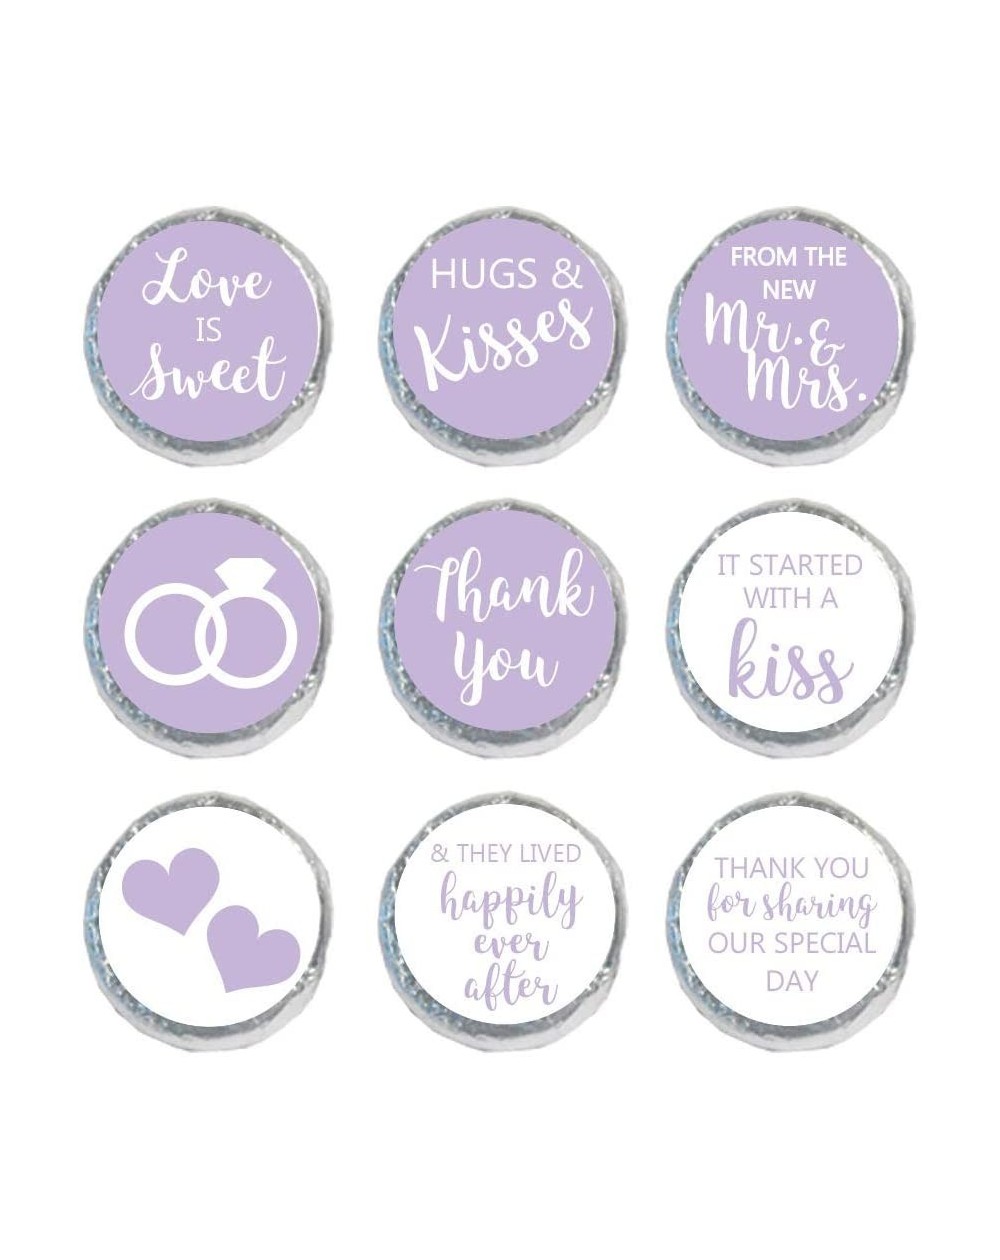 Favors Mini Candy Stickers Wedding Favors Set of 324 (Lavender) - Lavender - CT18L2Q46HZ $12.74